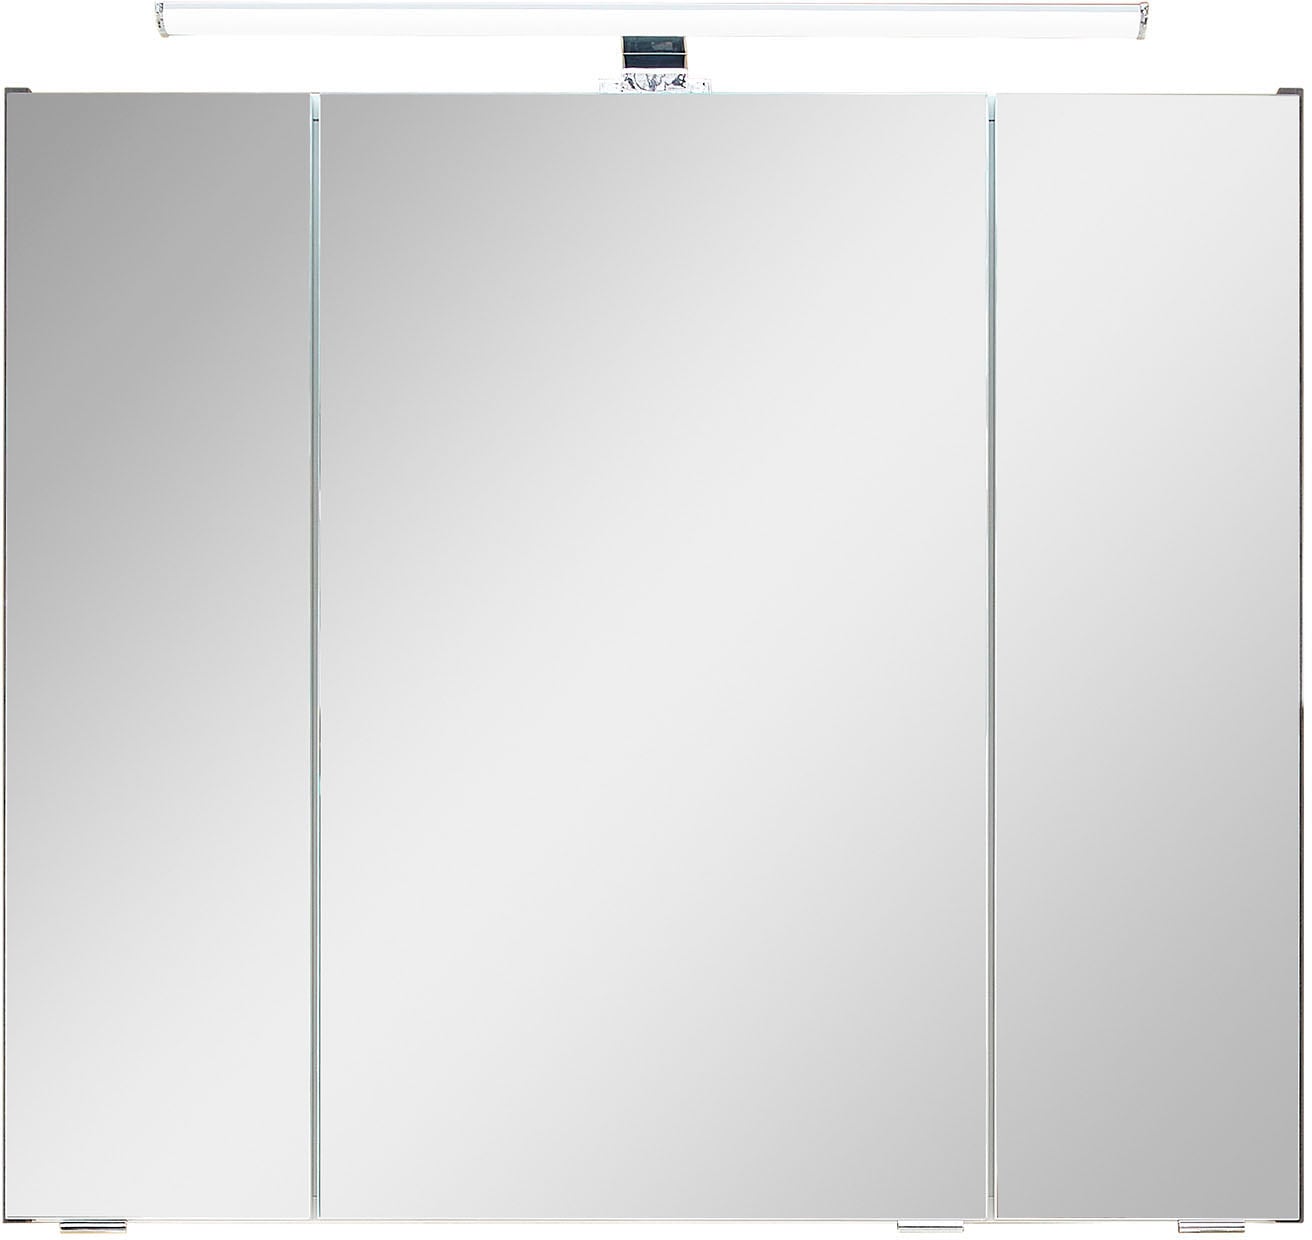 Saphir Badezimmerspiegelschrank »Quickset 945 Badschrank, 3 Spiegeltüren, 6 Einlegeböden, 80 cm breit«, inkl. LED-Beleuchtung, Türdämpfer, Schalter-/Steckdosenkombination